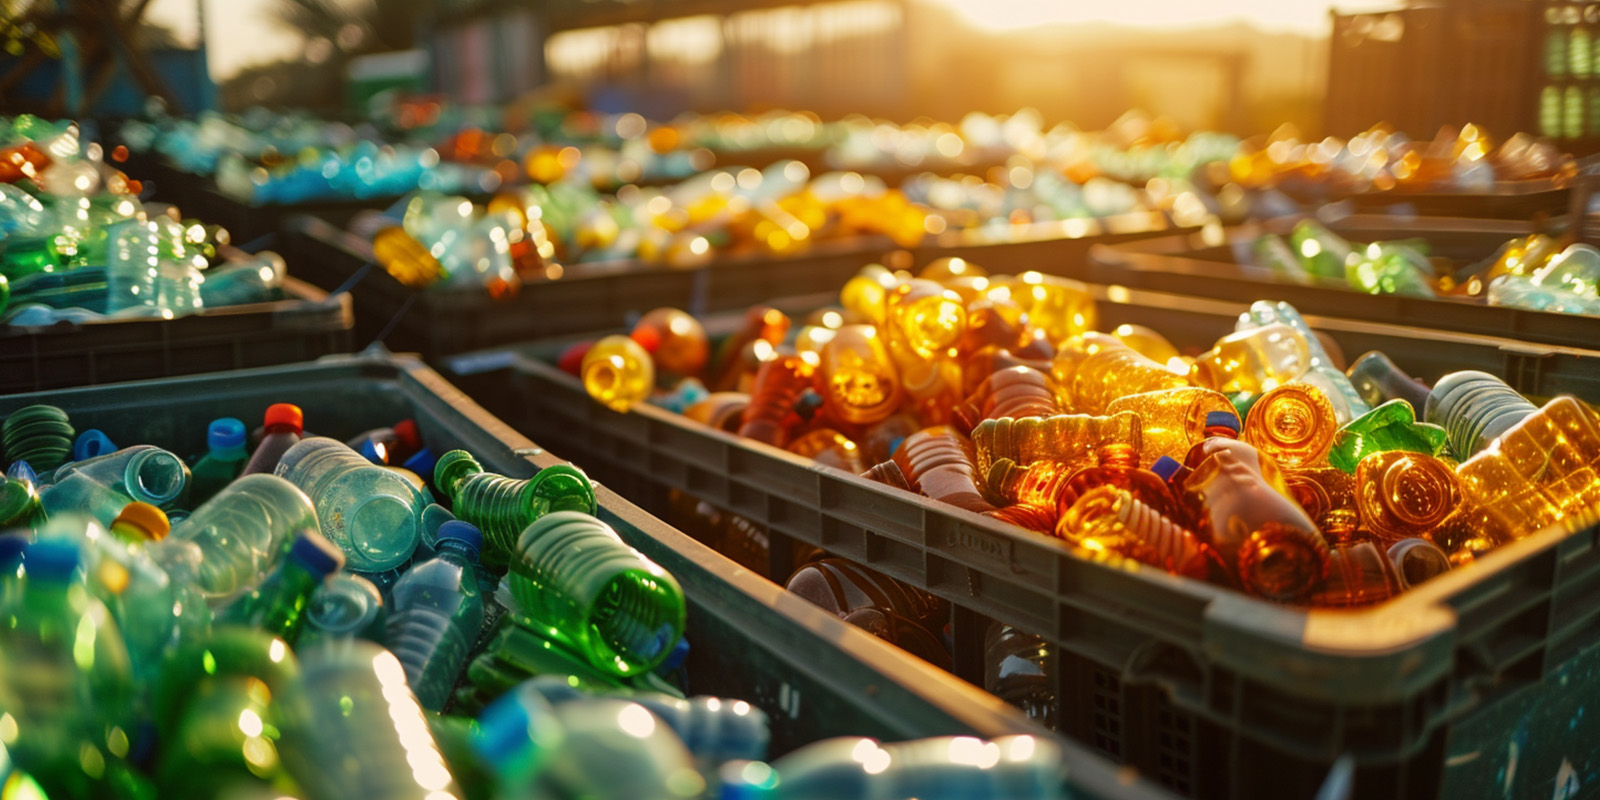 Contenedores de residuos para reciclar llenos de botellas de plástico de colores.